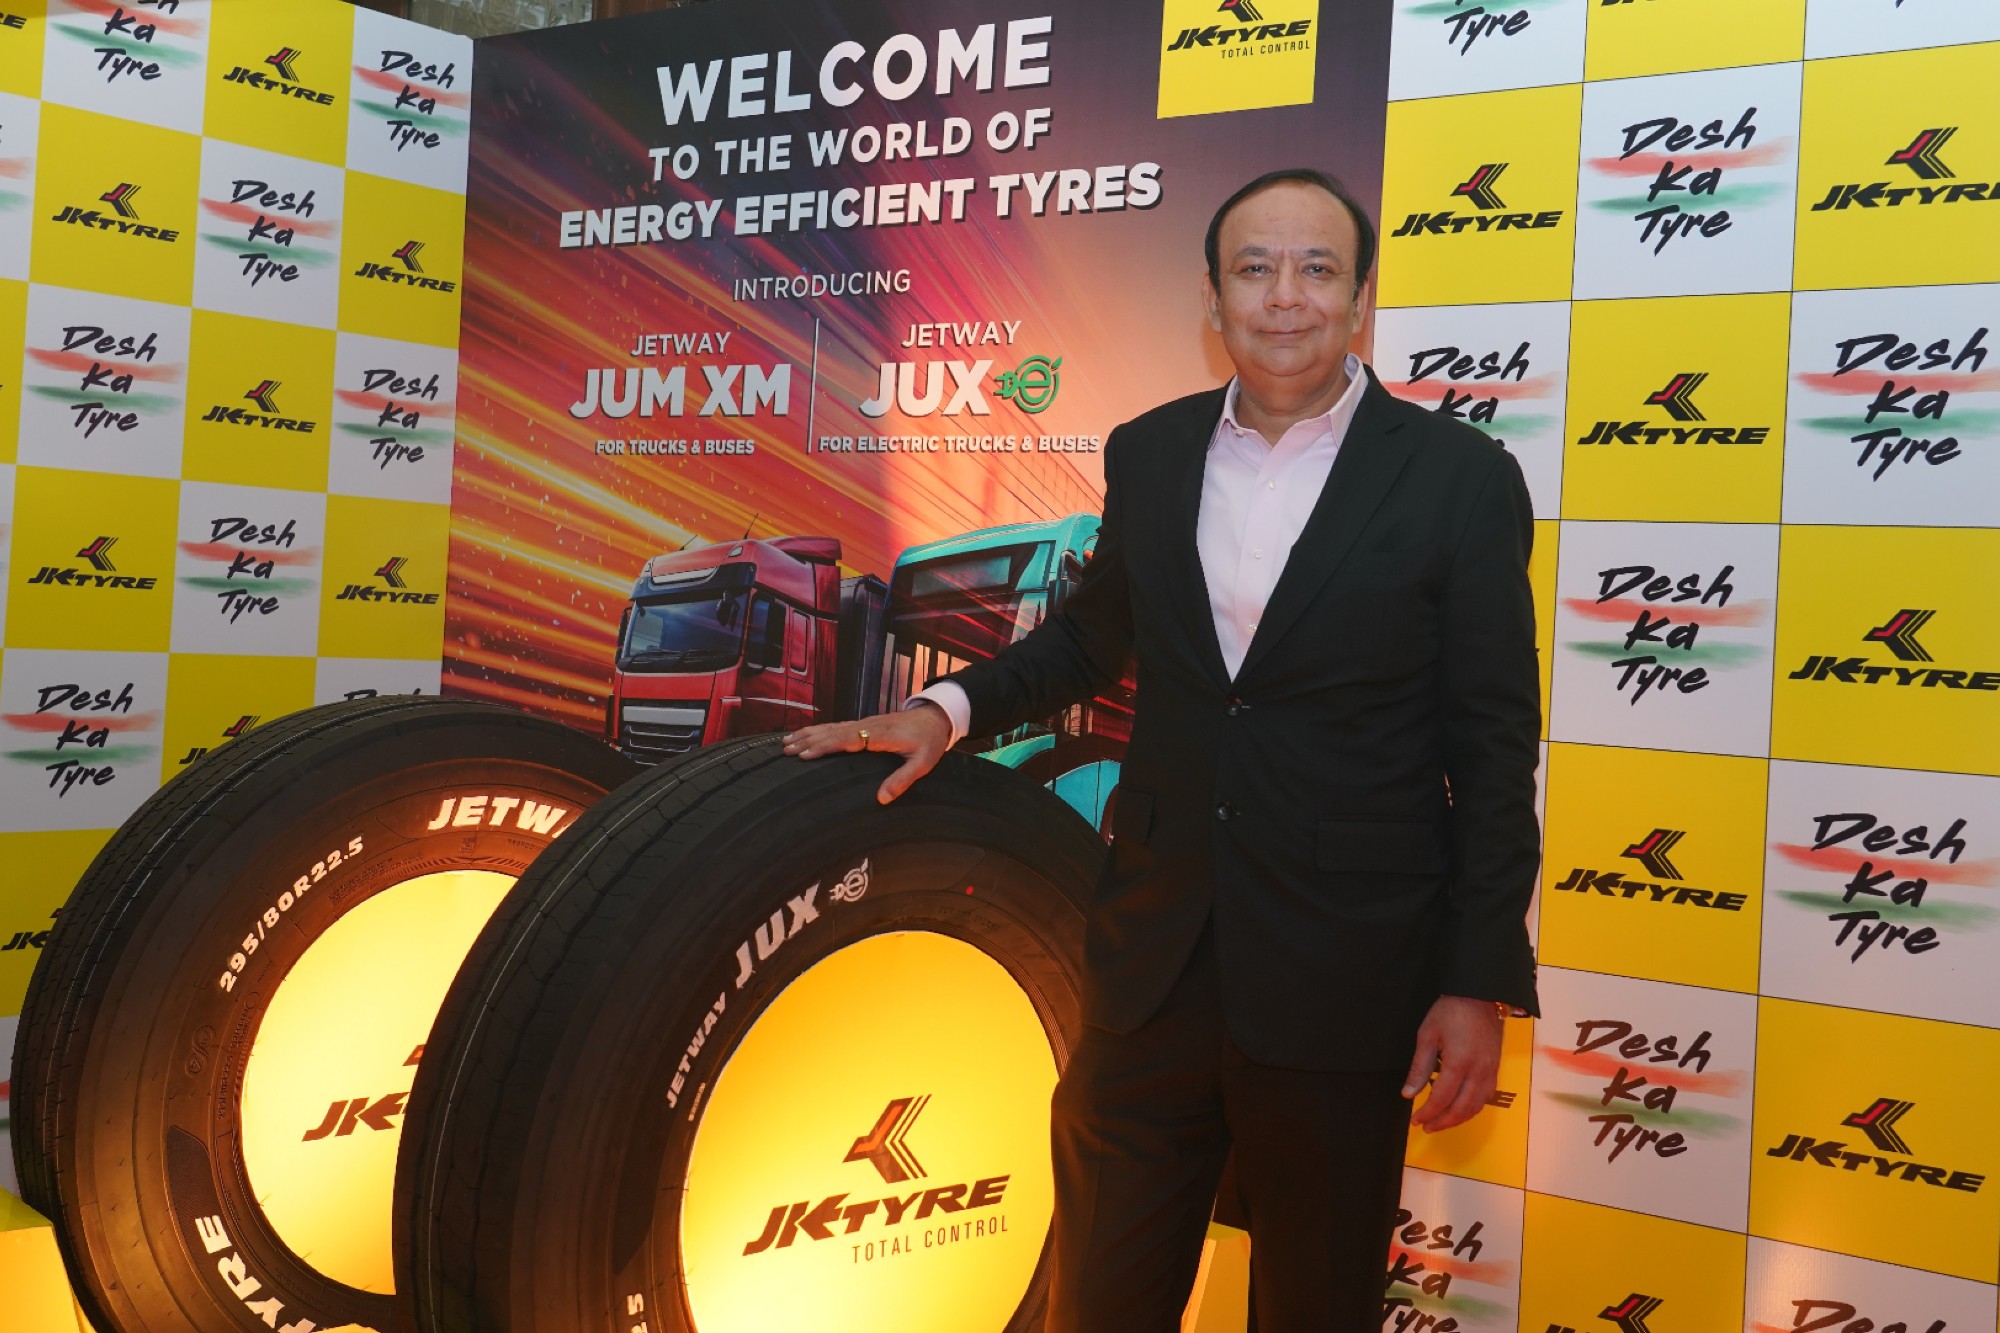 JK Tyre redefines transportation industry standards